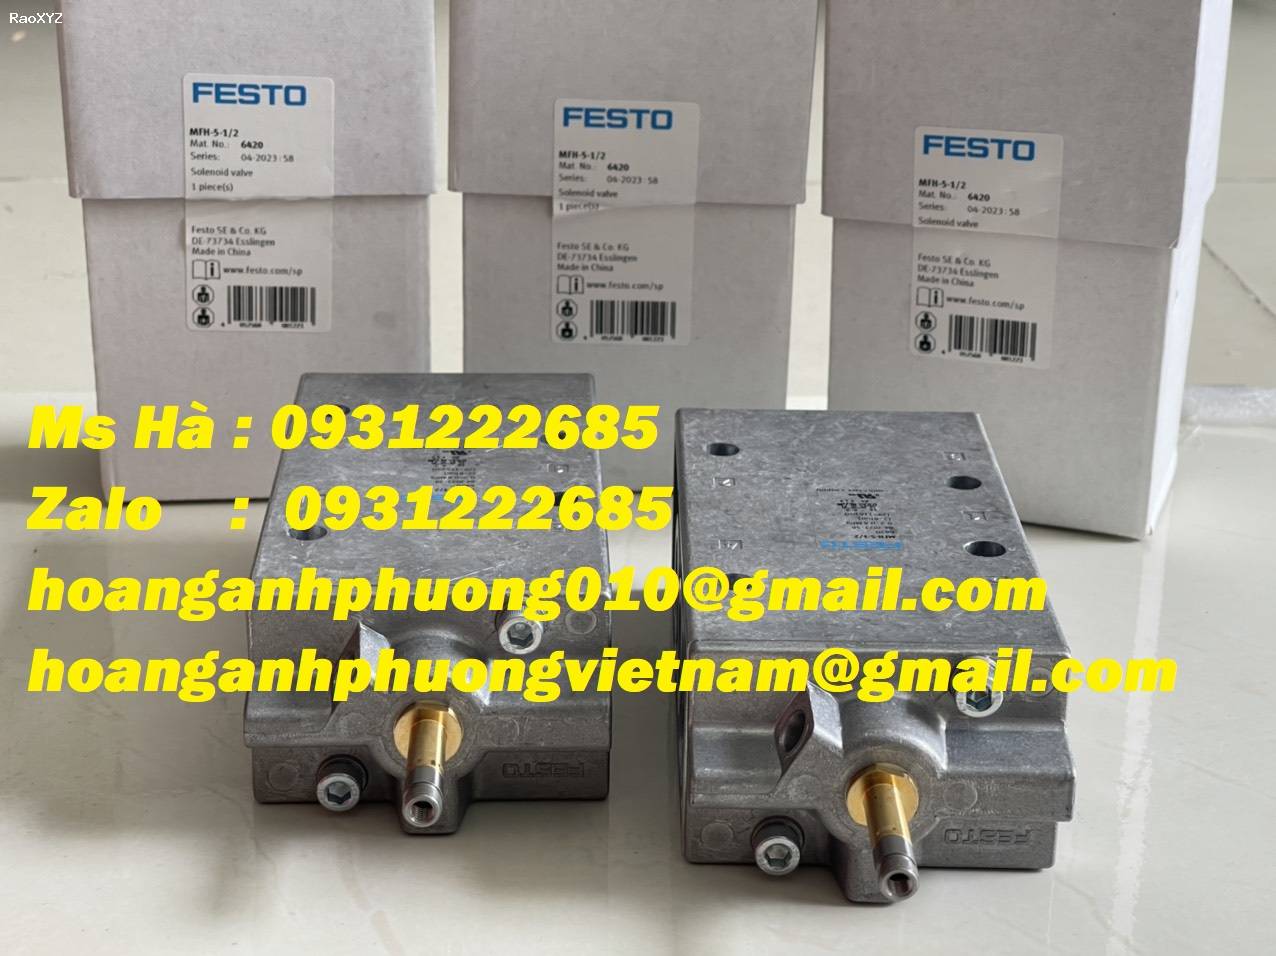 Giá tốt Bình Dương - Van điện từ nhập khẩu hãng Festo MFH-5-1/2